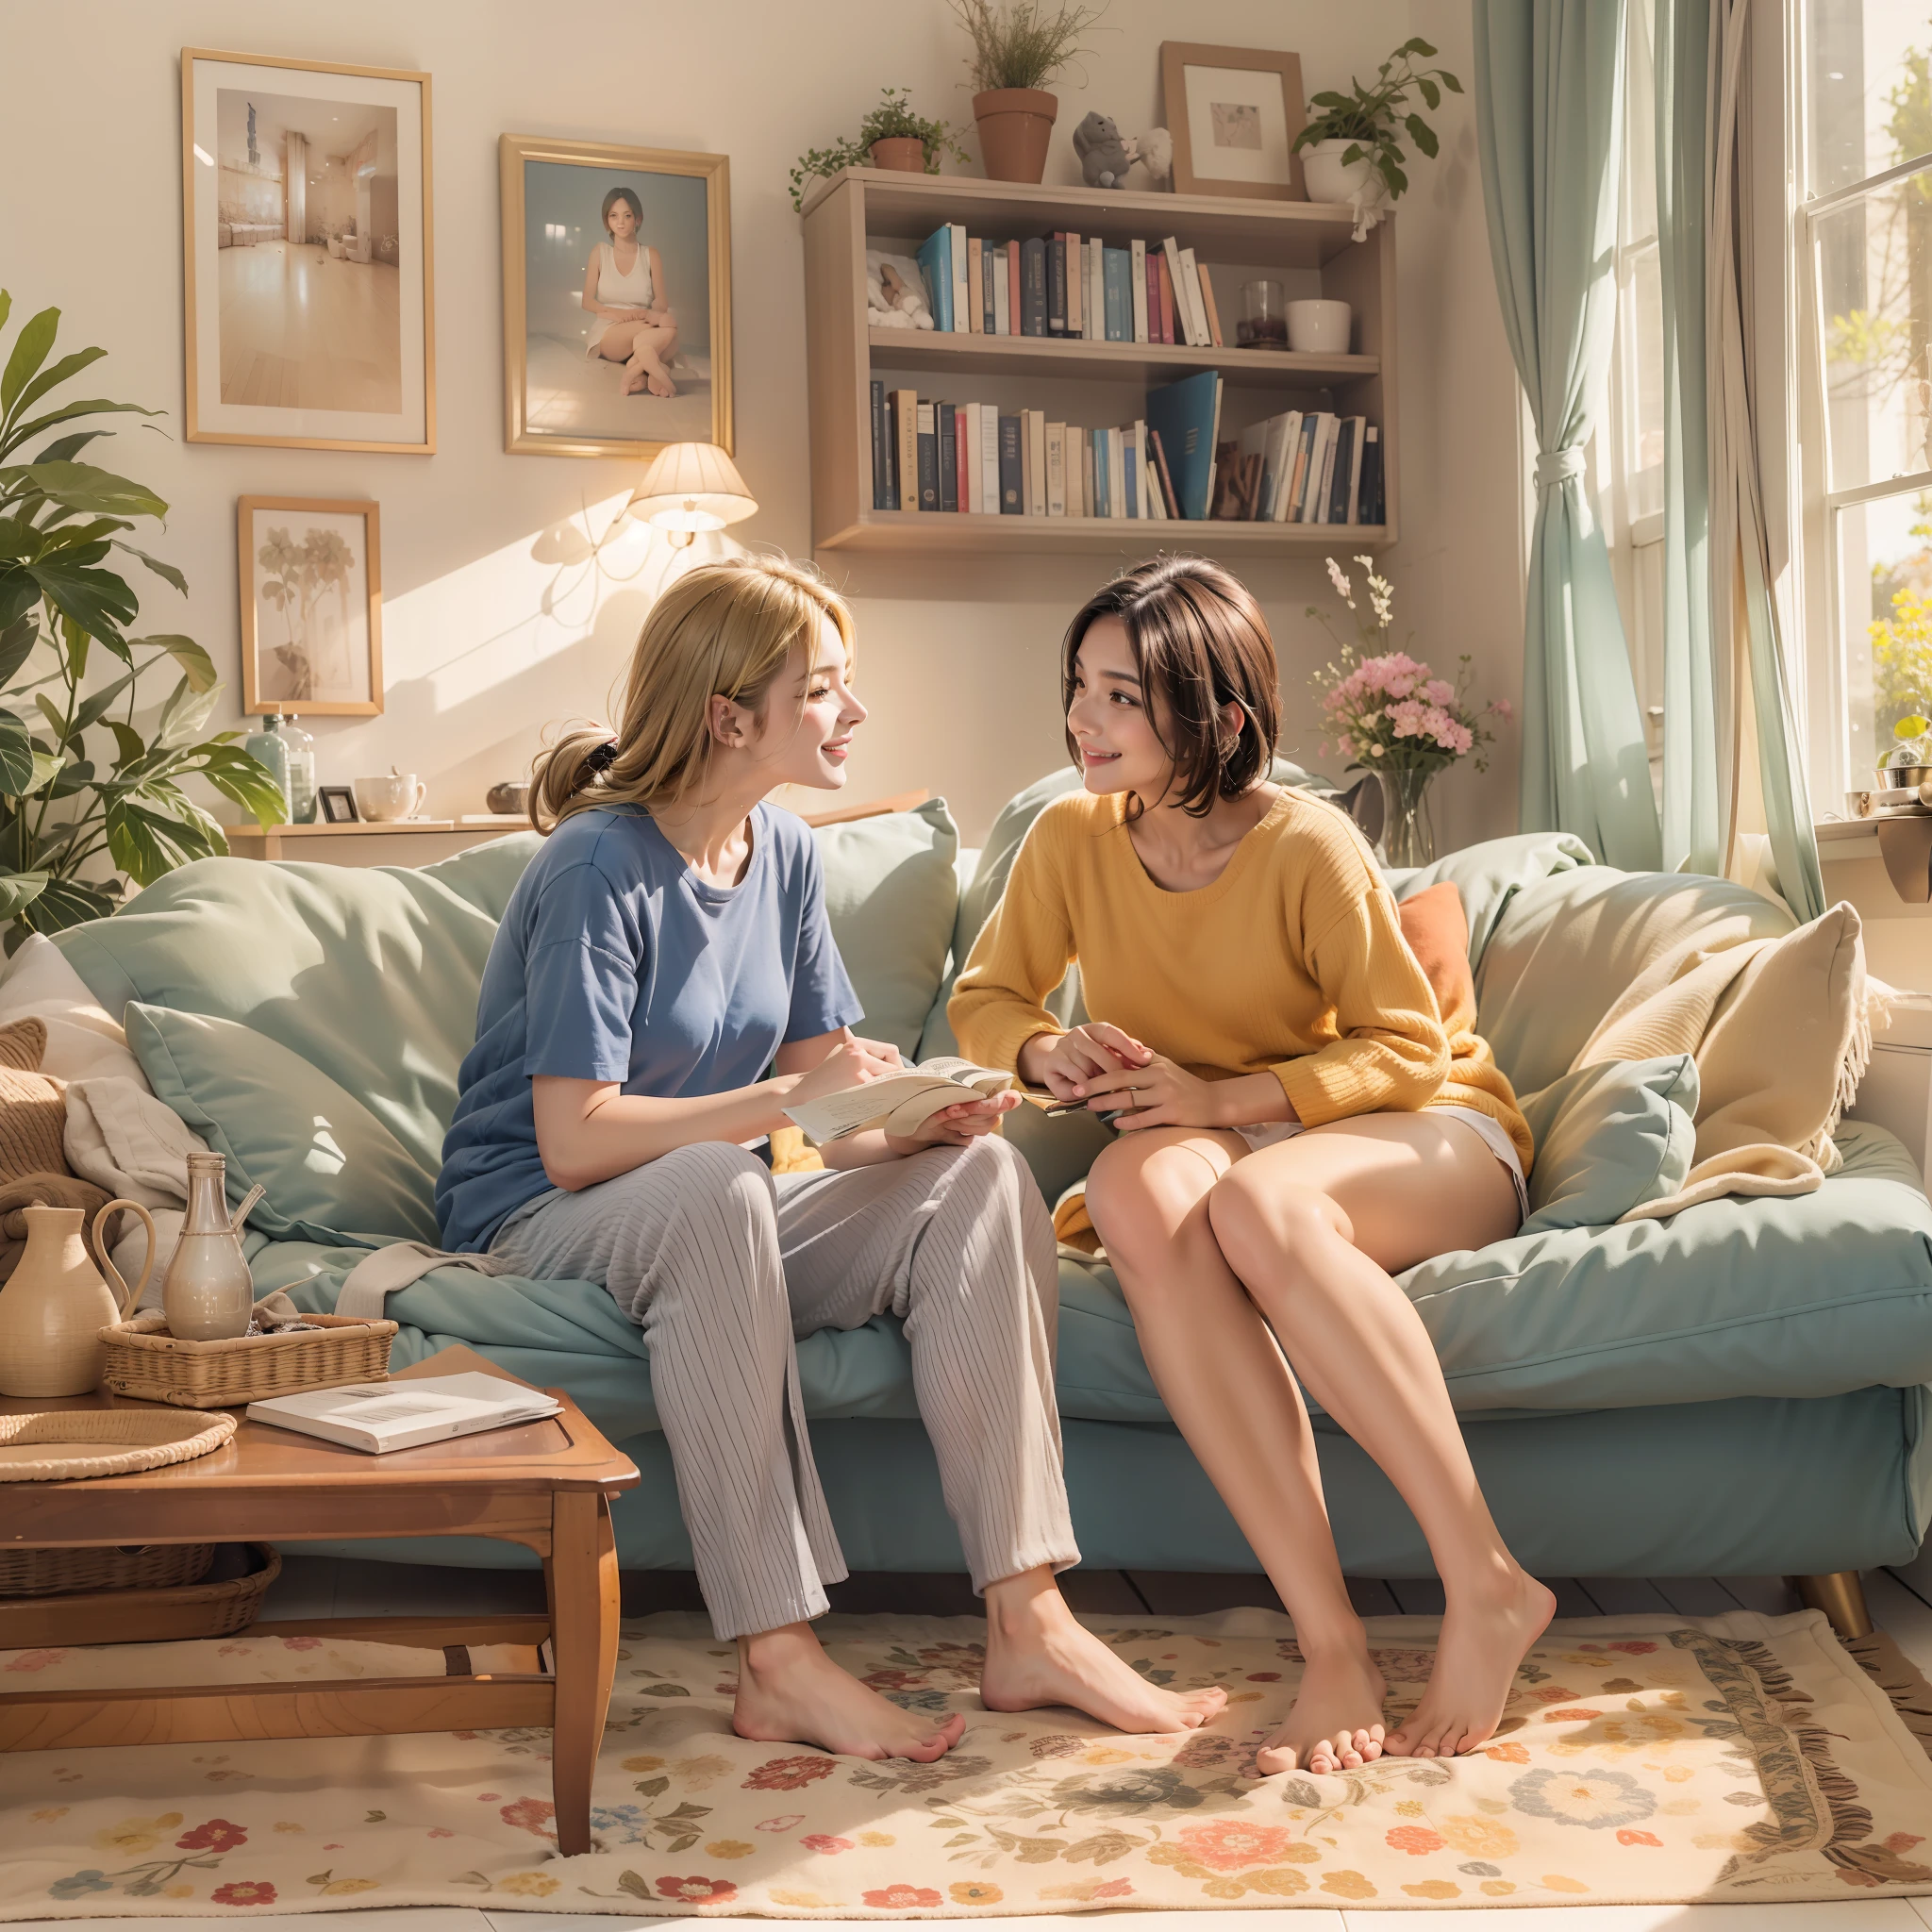 Duas mulheres, vestindo camisetas e calcinhas confortáveis, absorto em uma conversa sorrindo em uma aconchegante sala de estar em uma manhã tranquila. Uma mulher senta-se graciosamente no sofá, enquanto o outro se senta confortavelmente no chão.